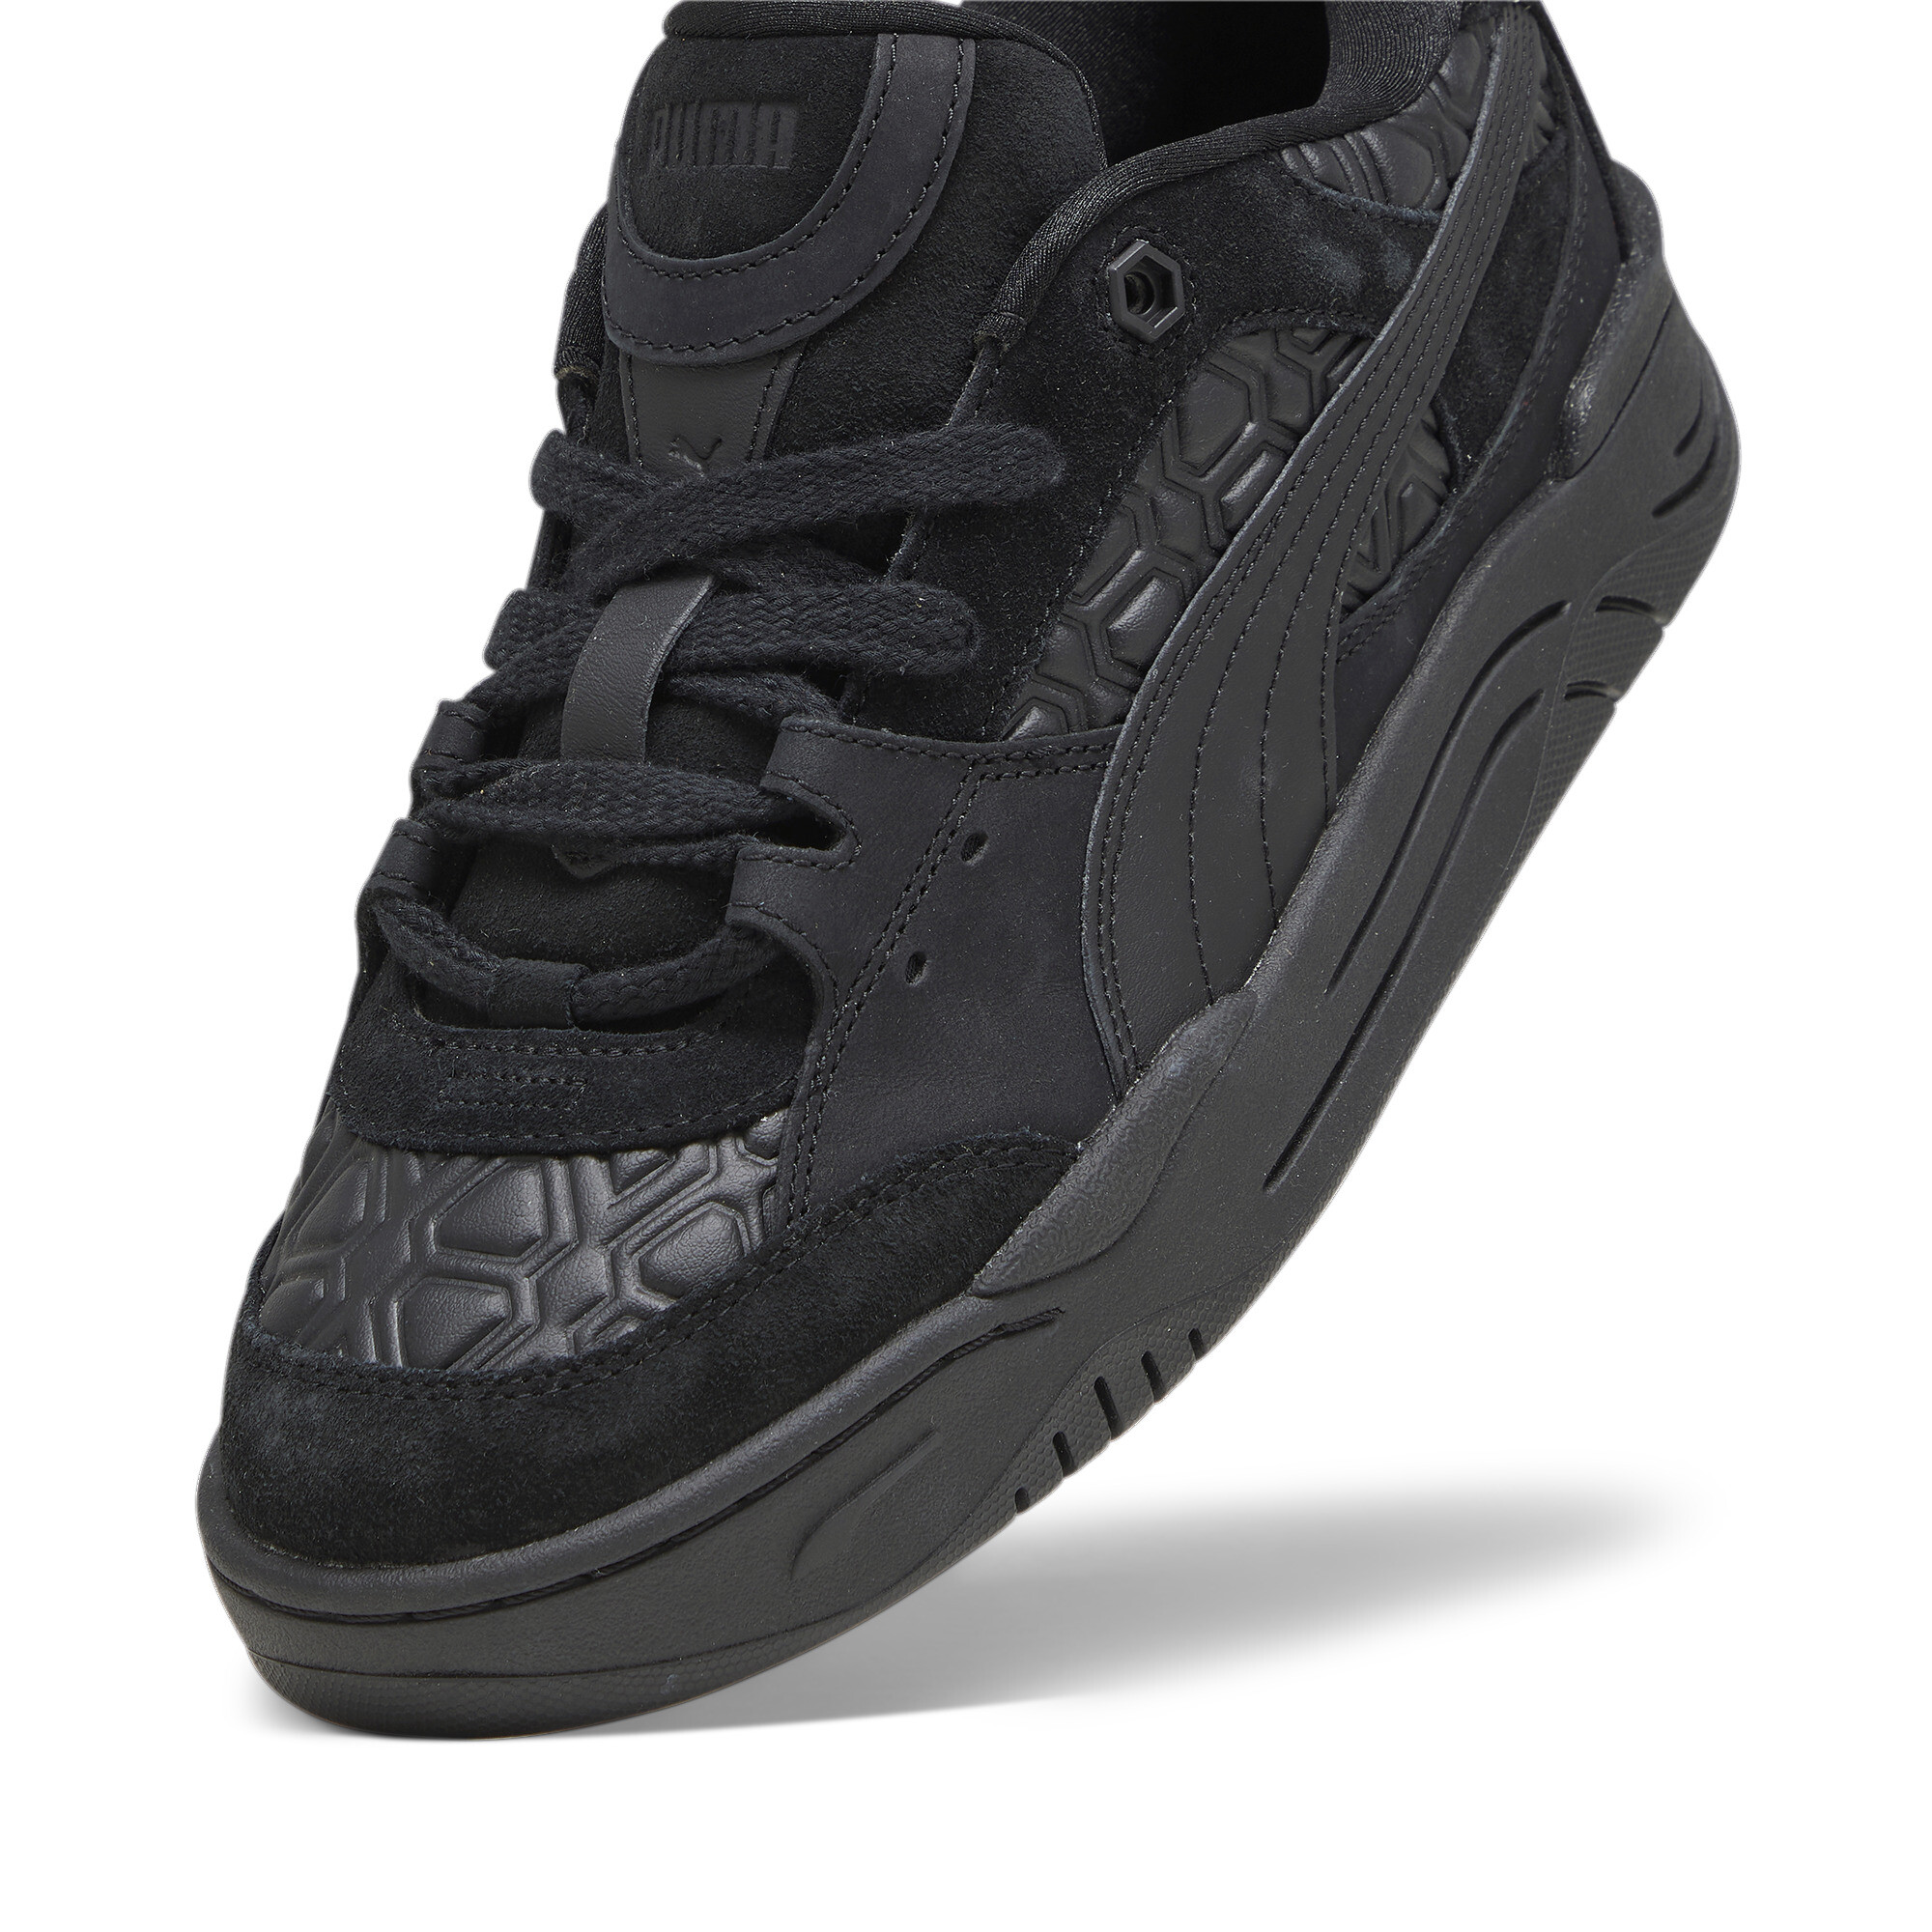 Men's LUXE SPORT PUMA-180 Sneakers In Black, Size EU 40